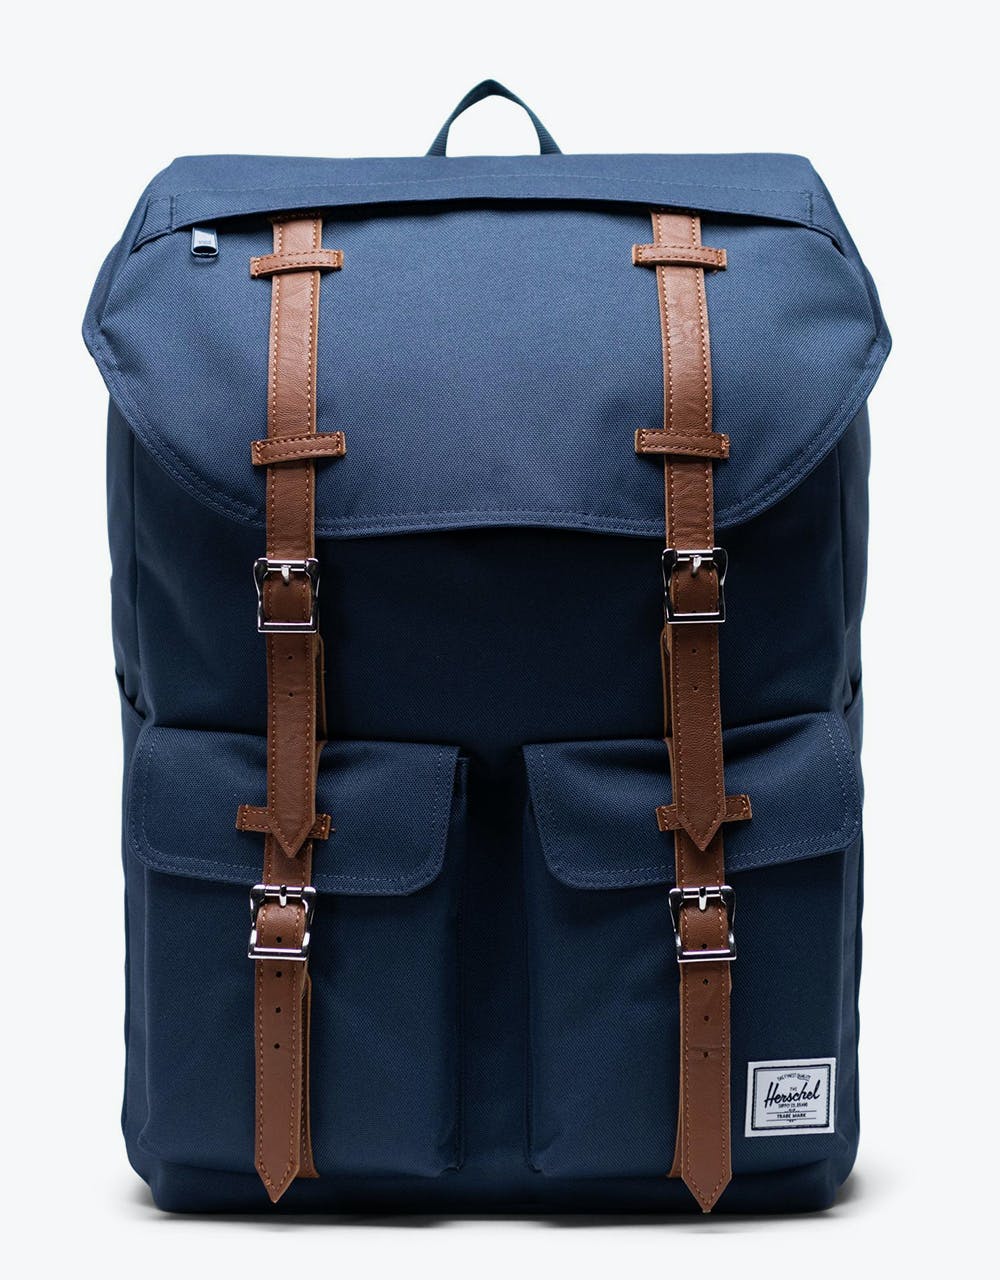 Herschel Supply Co. Buckingham Backpack - Navy/Tan